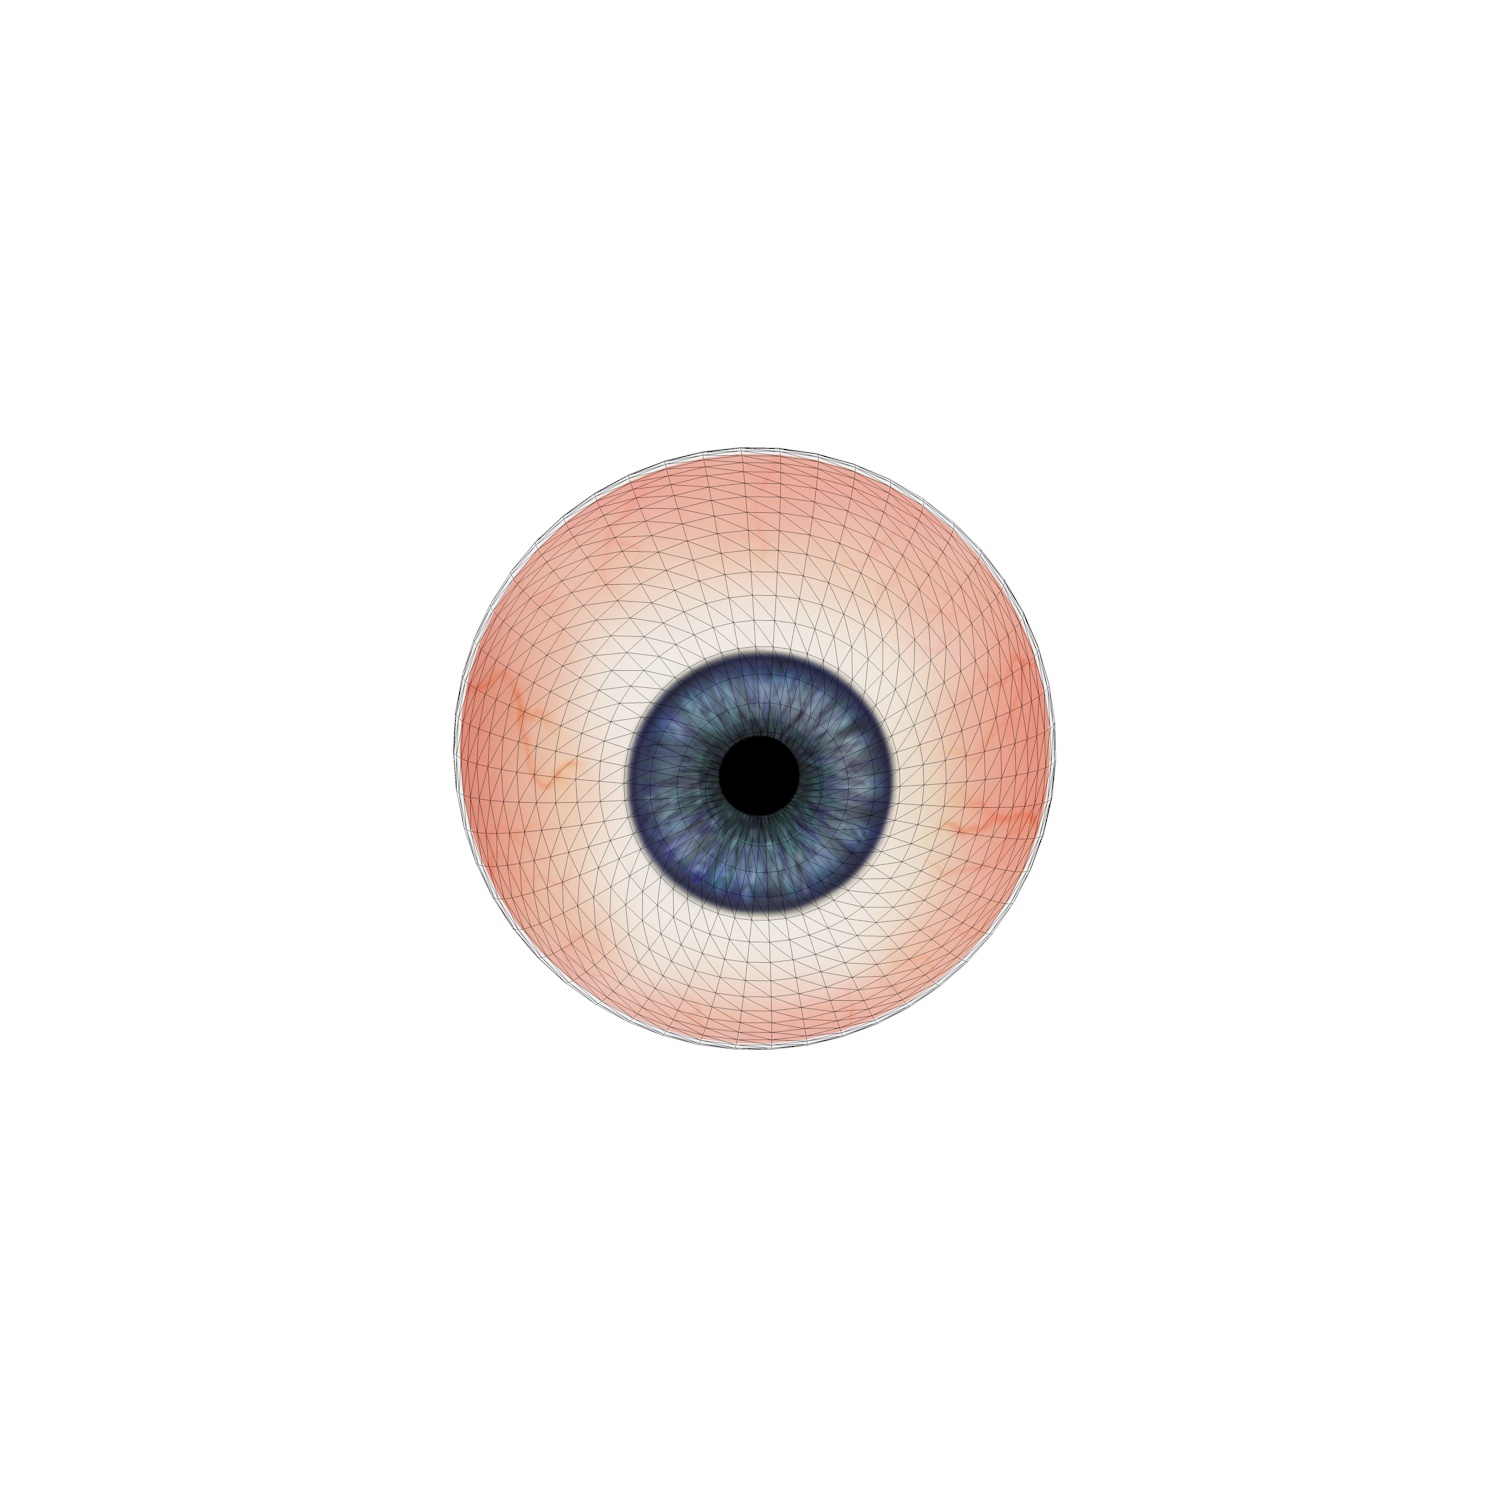 Living-human Eyeball 3d model